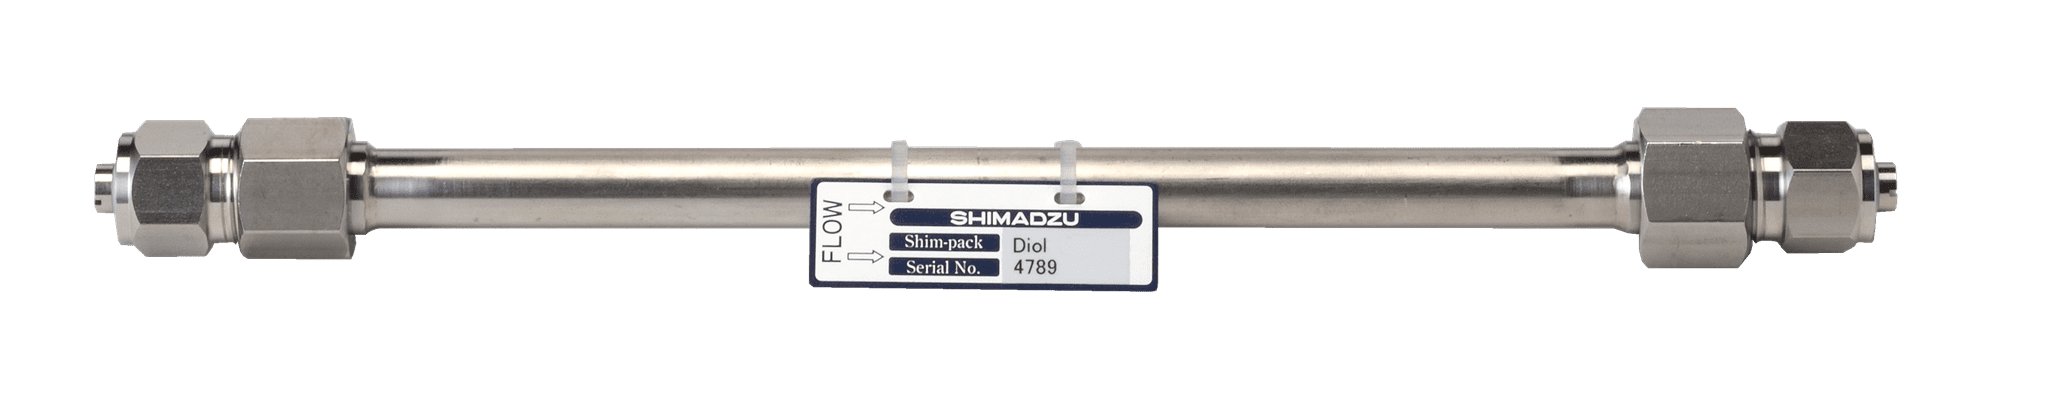 Bild von Shim-pack Diol-150; 5 µm; 250 x 7.9